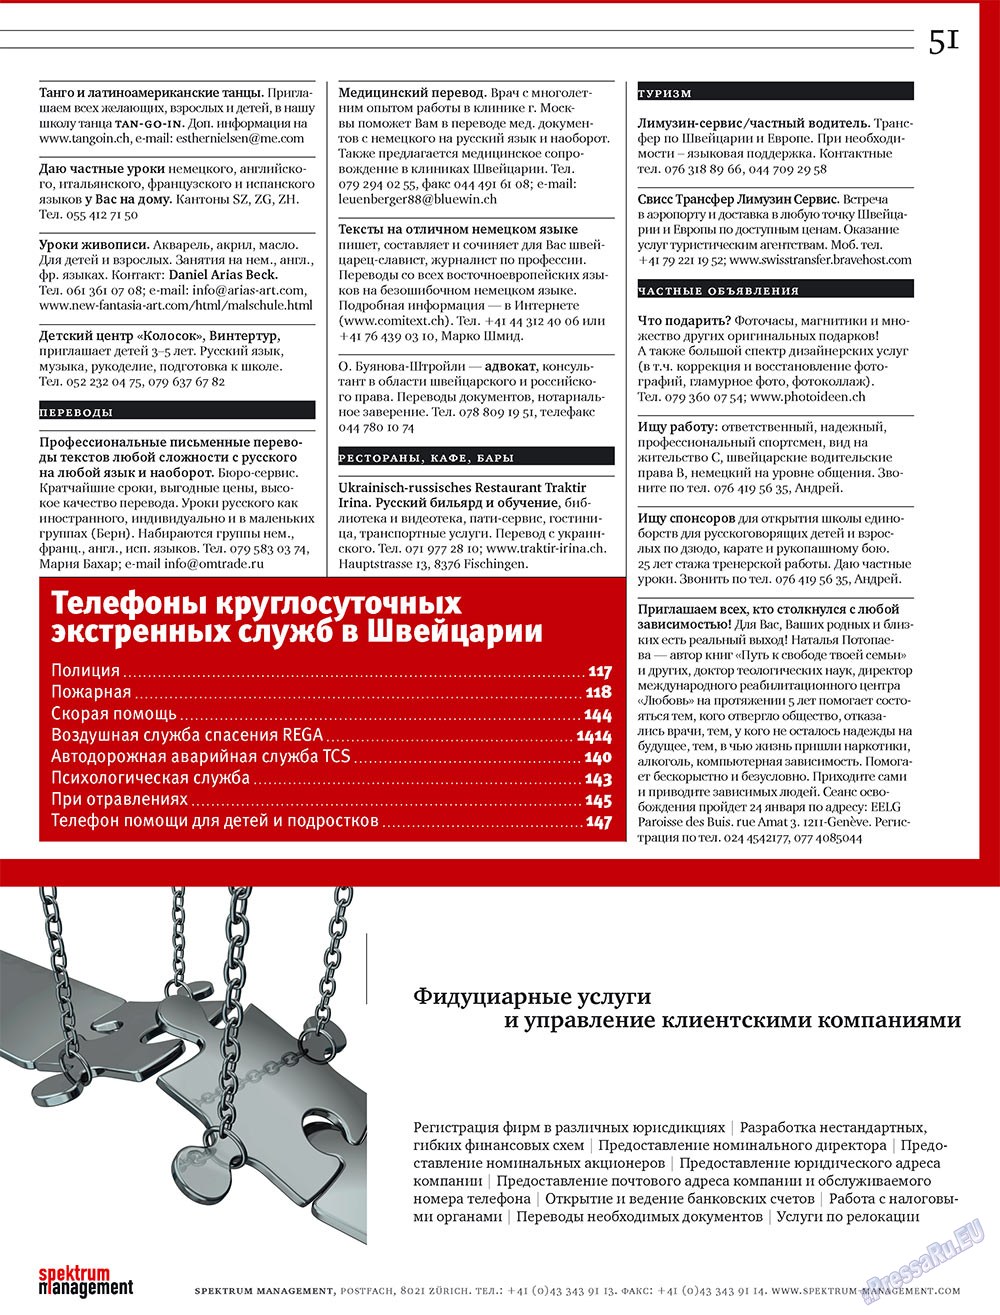 Русская Швейцария (журнал). 2009 год, номер 1, стр. 51